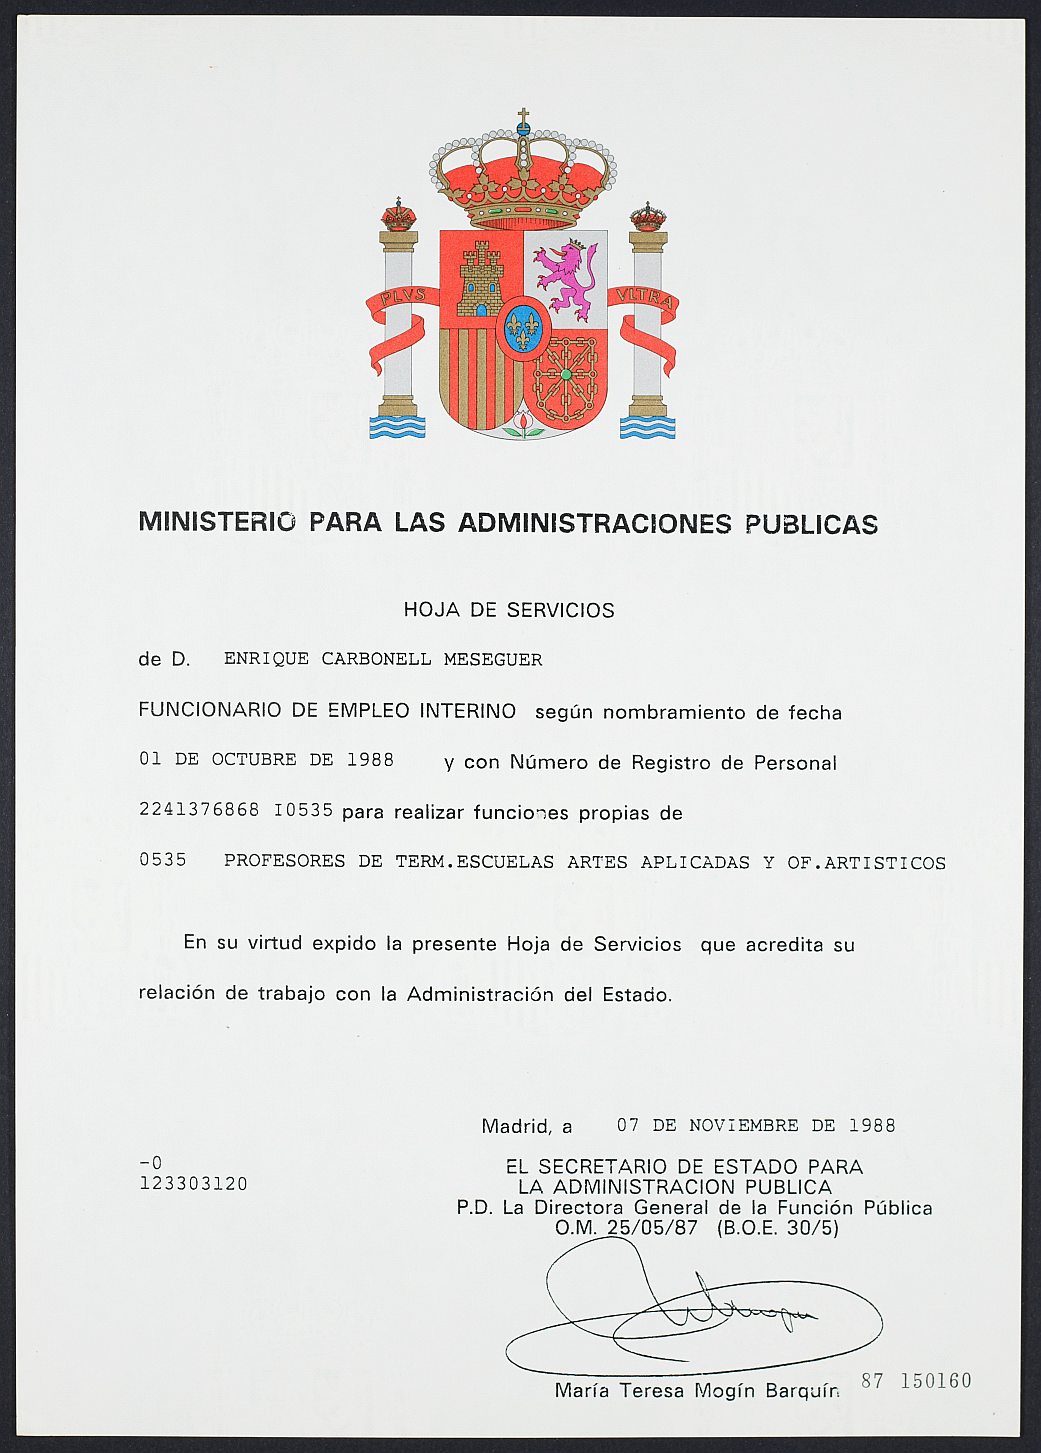 Hoja de servicios de Enrique Carbonell como funcionario interino del Ministerio de Administraciones Públicas.